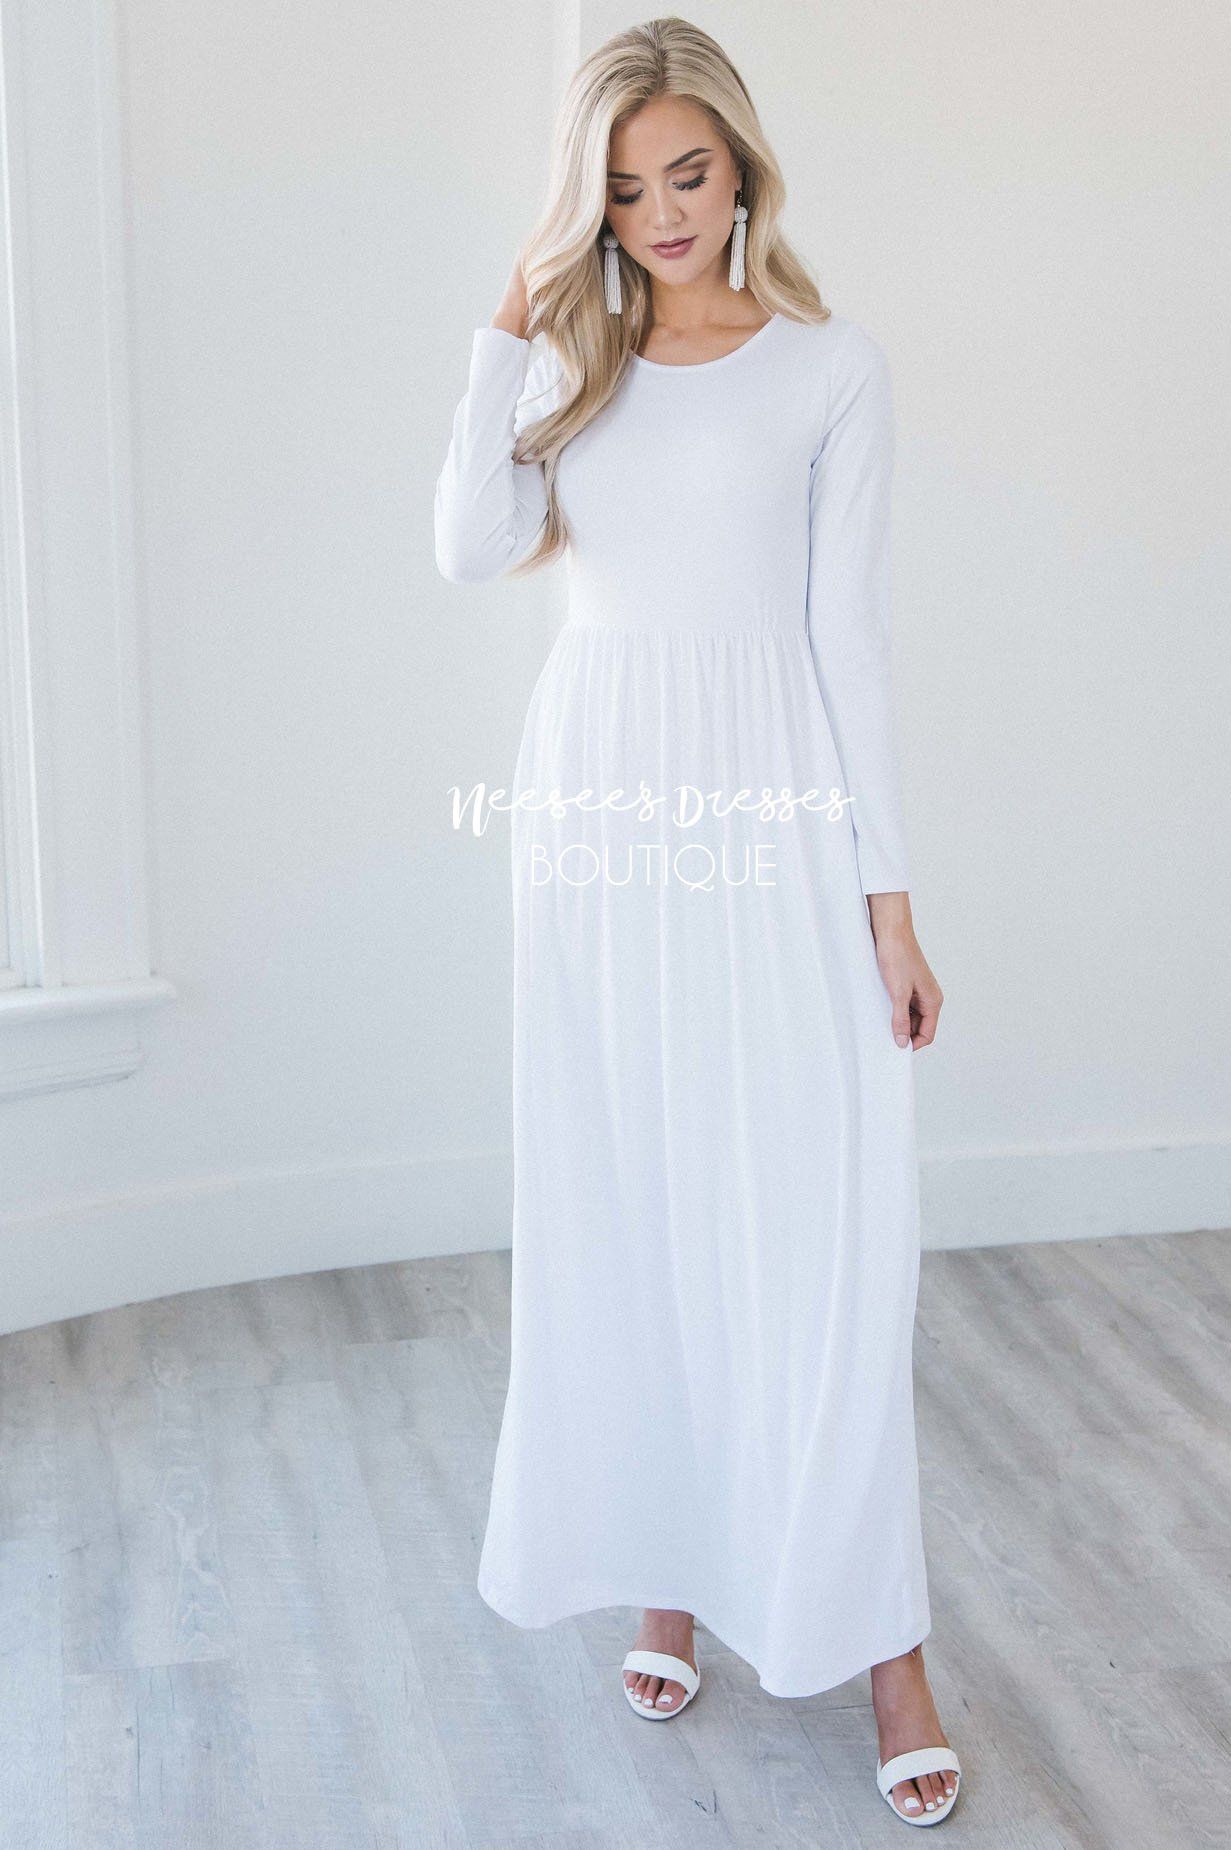 elegant modest dresses